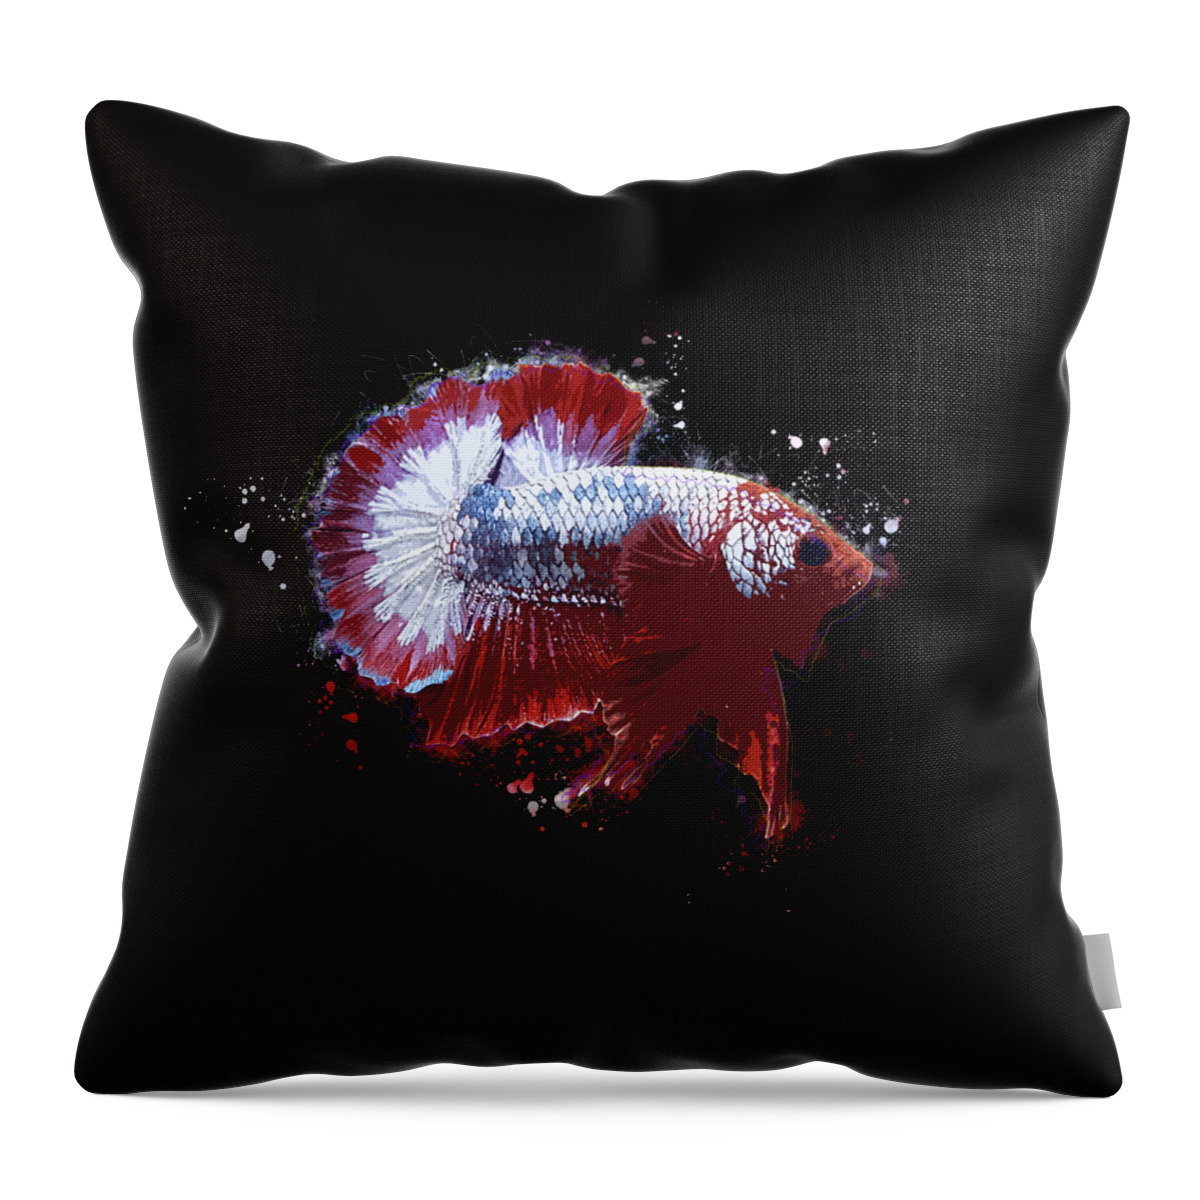 Artistic Throw Pillow featuring the digital art Artistic FCCP Betta Fish by Sambel Pedes